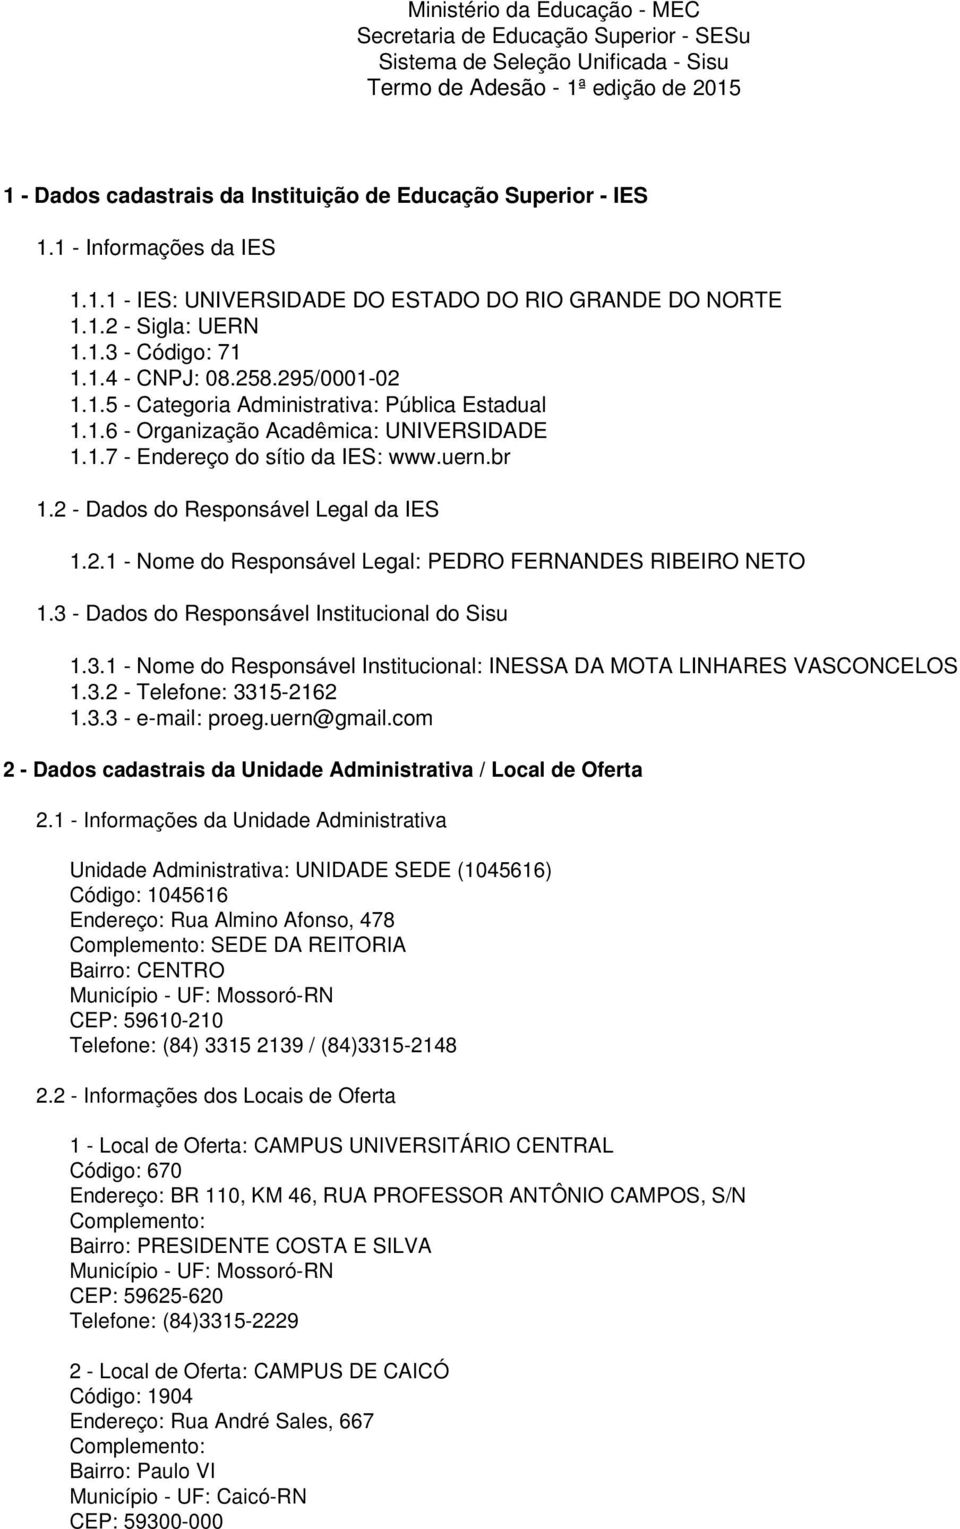 1.6 - Organização Acadêmica: UNIVERSIDADE 1.1.7 - Endereço do sítio da IES: www.uern.br 1.2 - Dados do Responsável Legal da IES 1.2.1 - Nome do Responsável Legal: PEDRO FERNANDES RIBEIRO NETO 1.